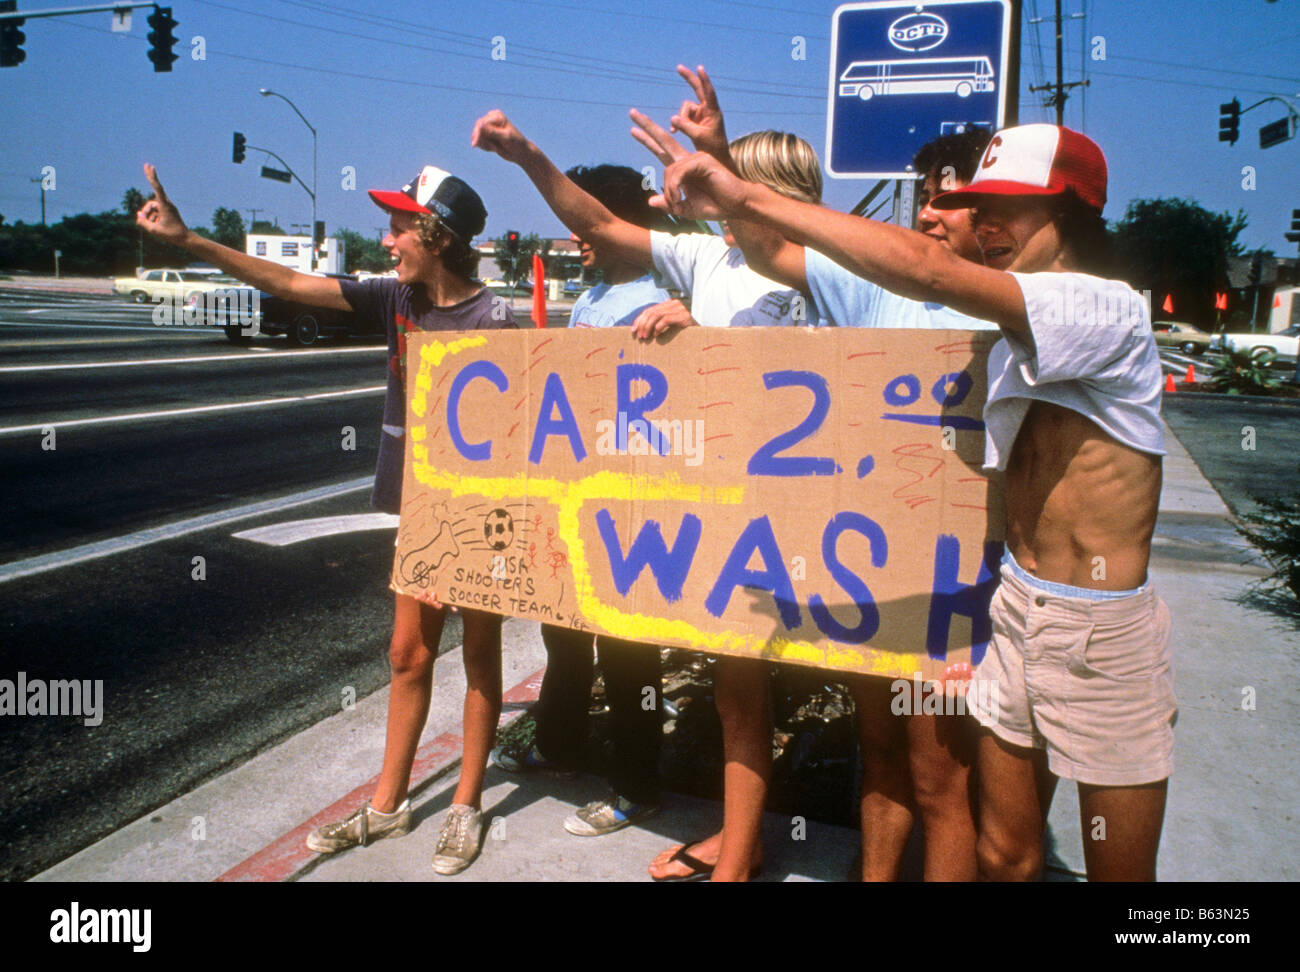 Teenie jungen halten Zeichen Förderung Autowäsche, Gelder für ihre Fußball-Team-Lieferungen. Stockfoto